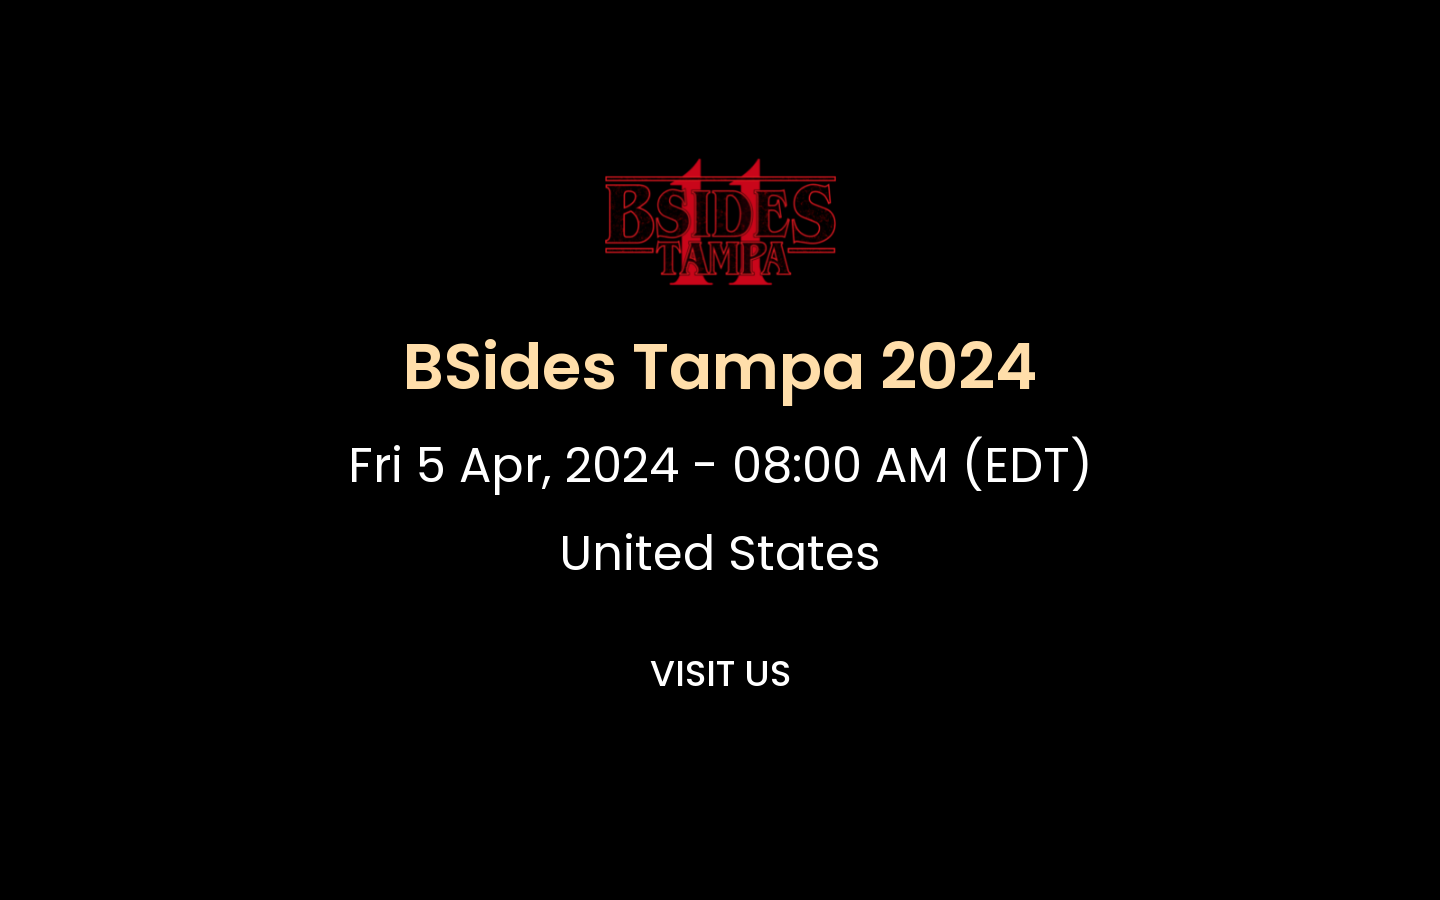 BSides Tampa 2024